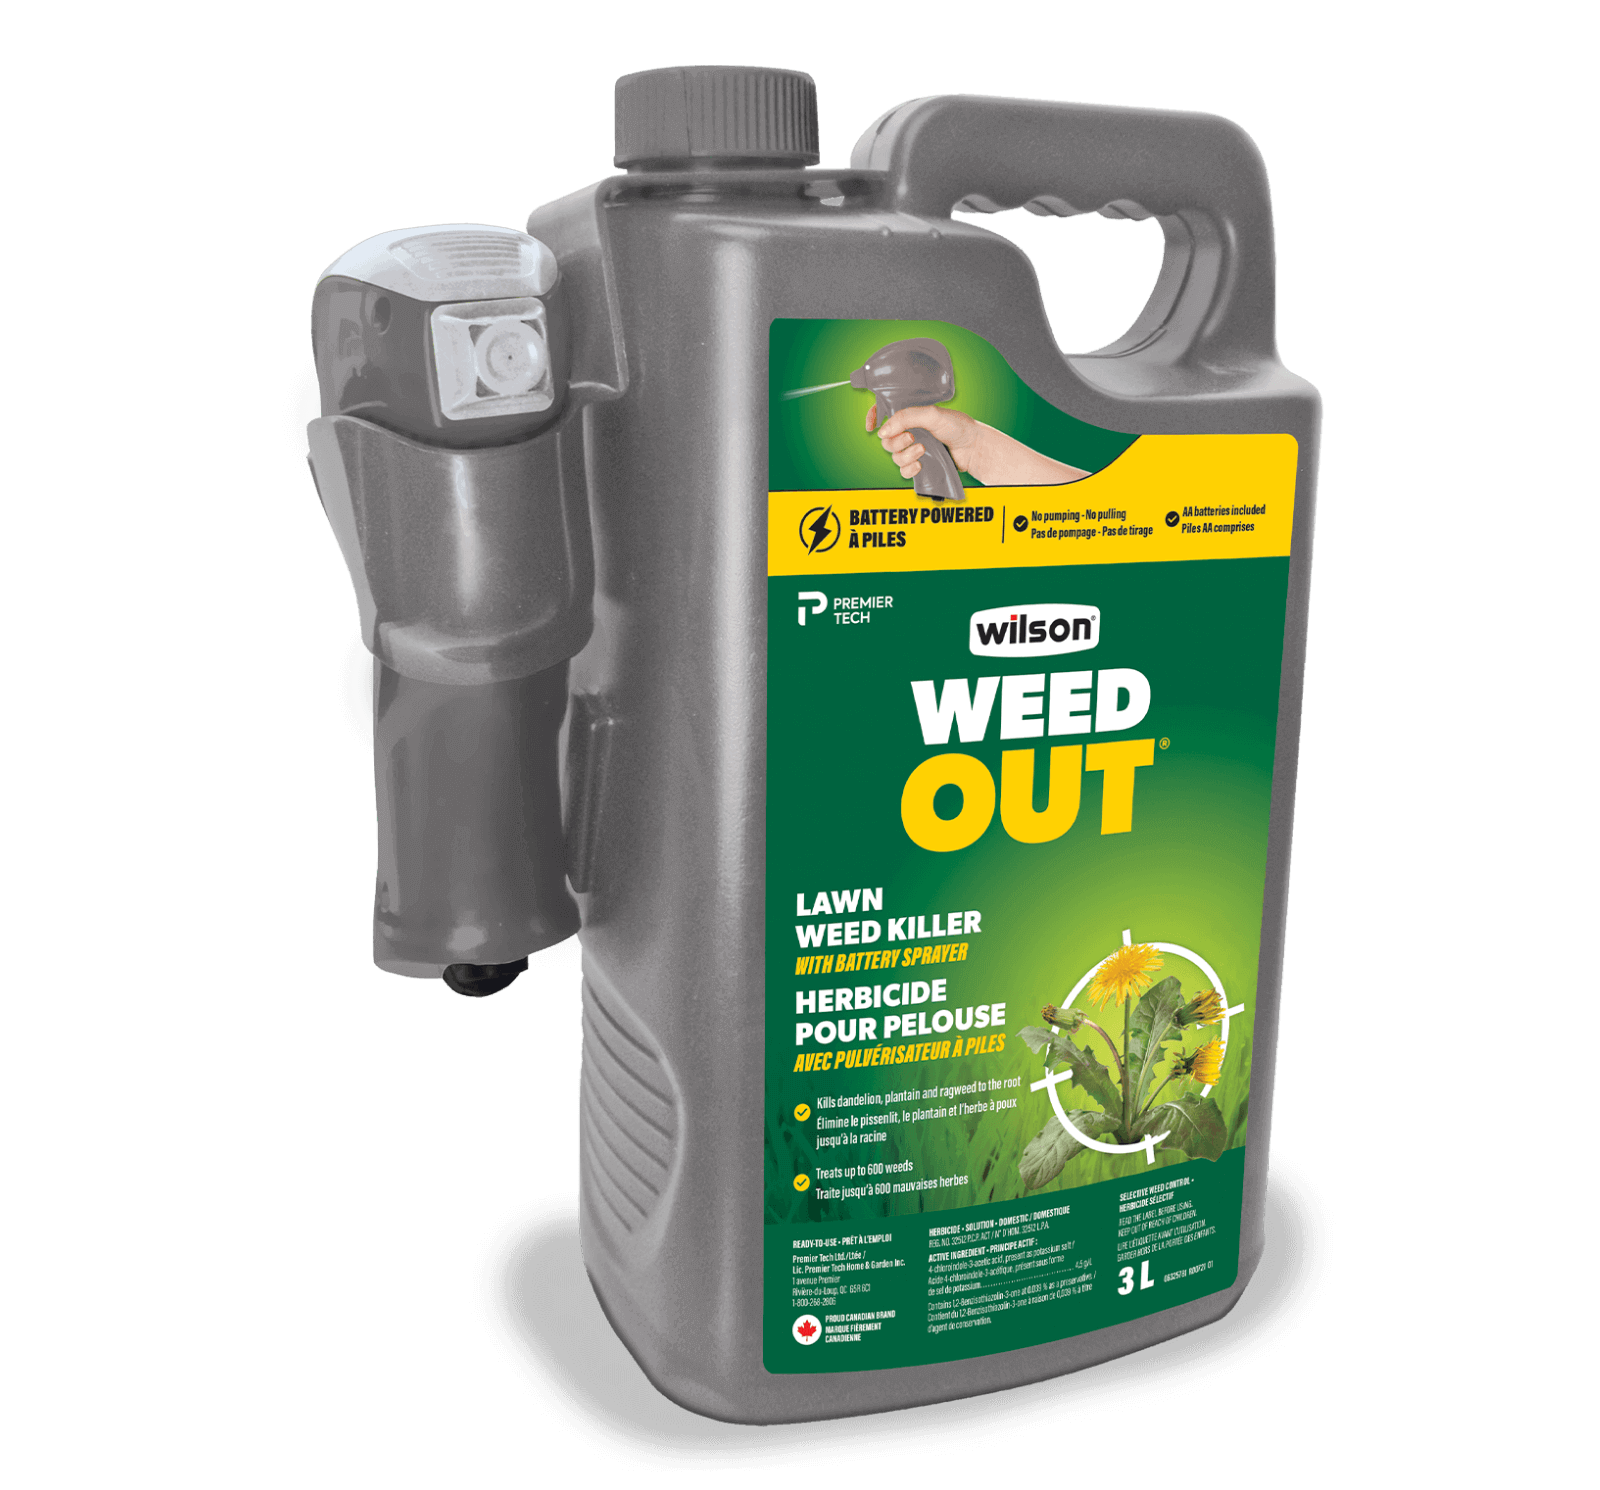 L'herbicide pour pelouse avec pulvérisateur à piles WEED OUT de Wilson est facile à utiliser